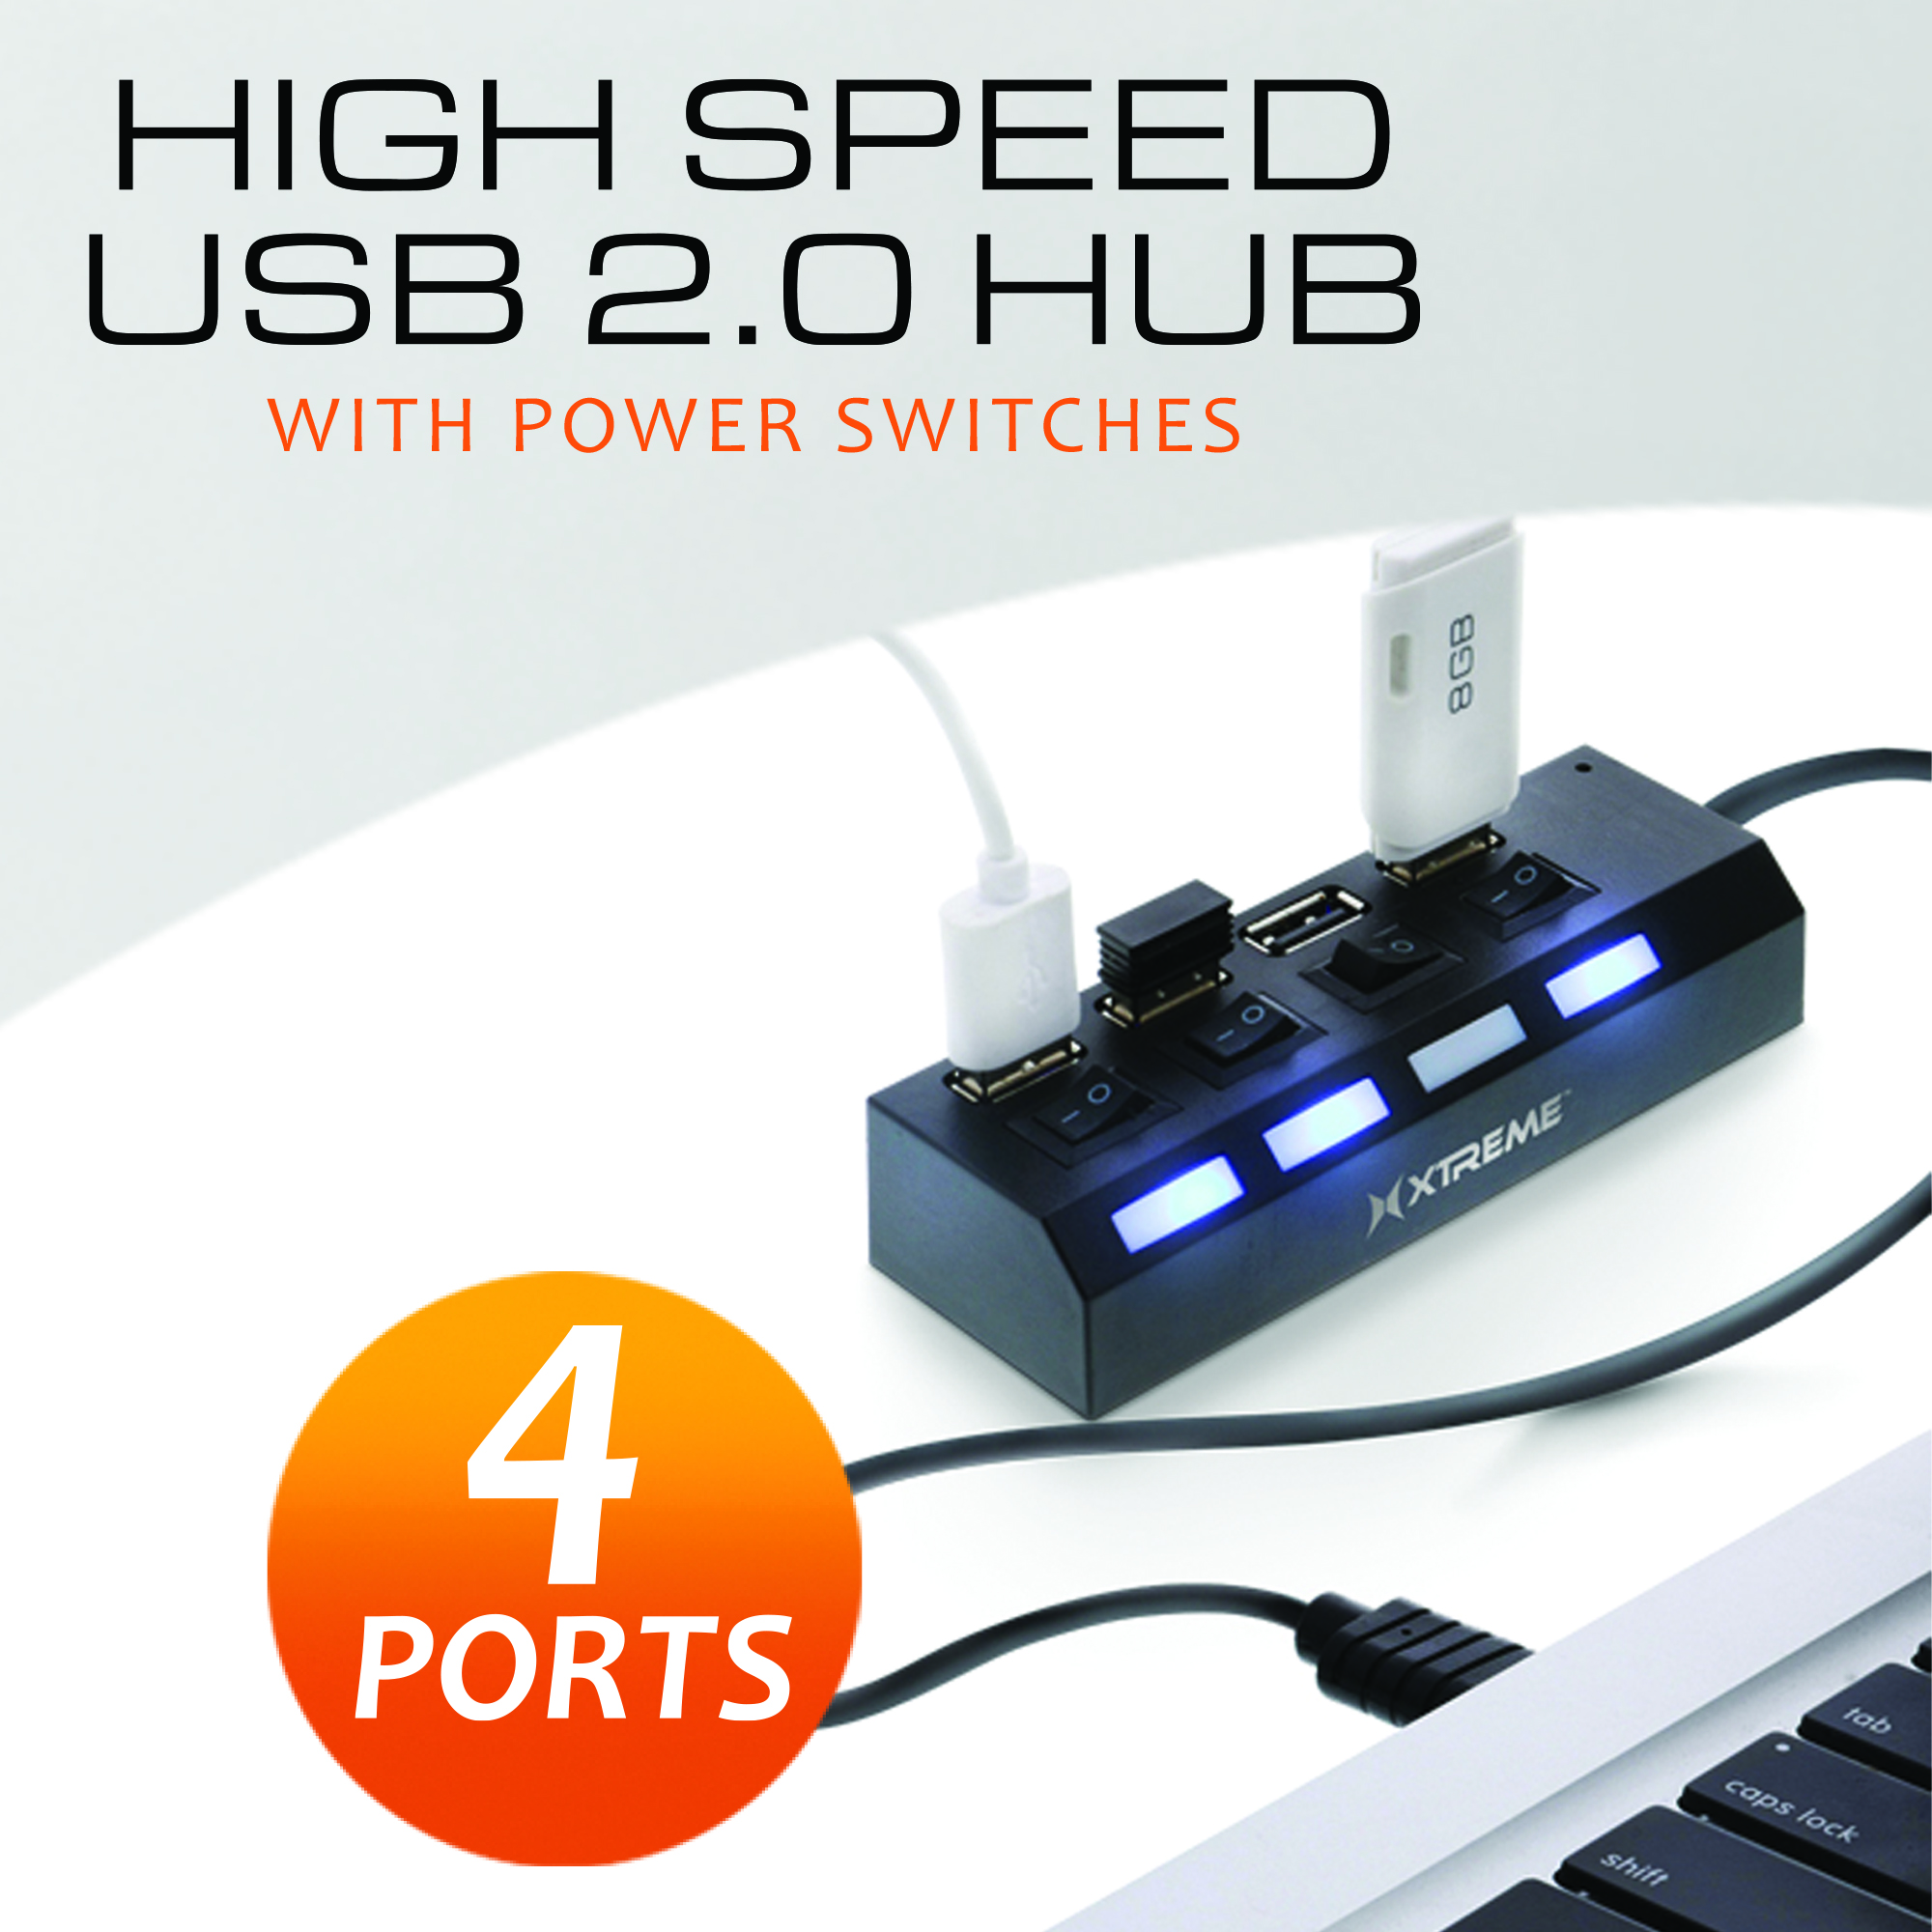 4 PORTS USB 2.0 HUB